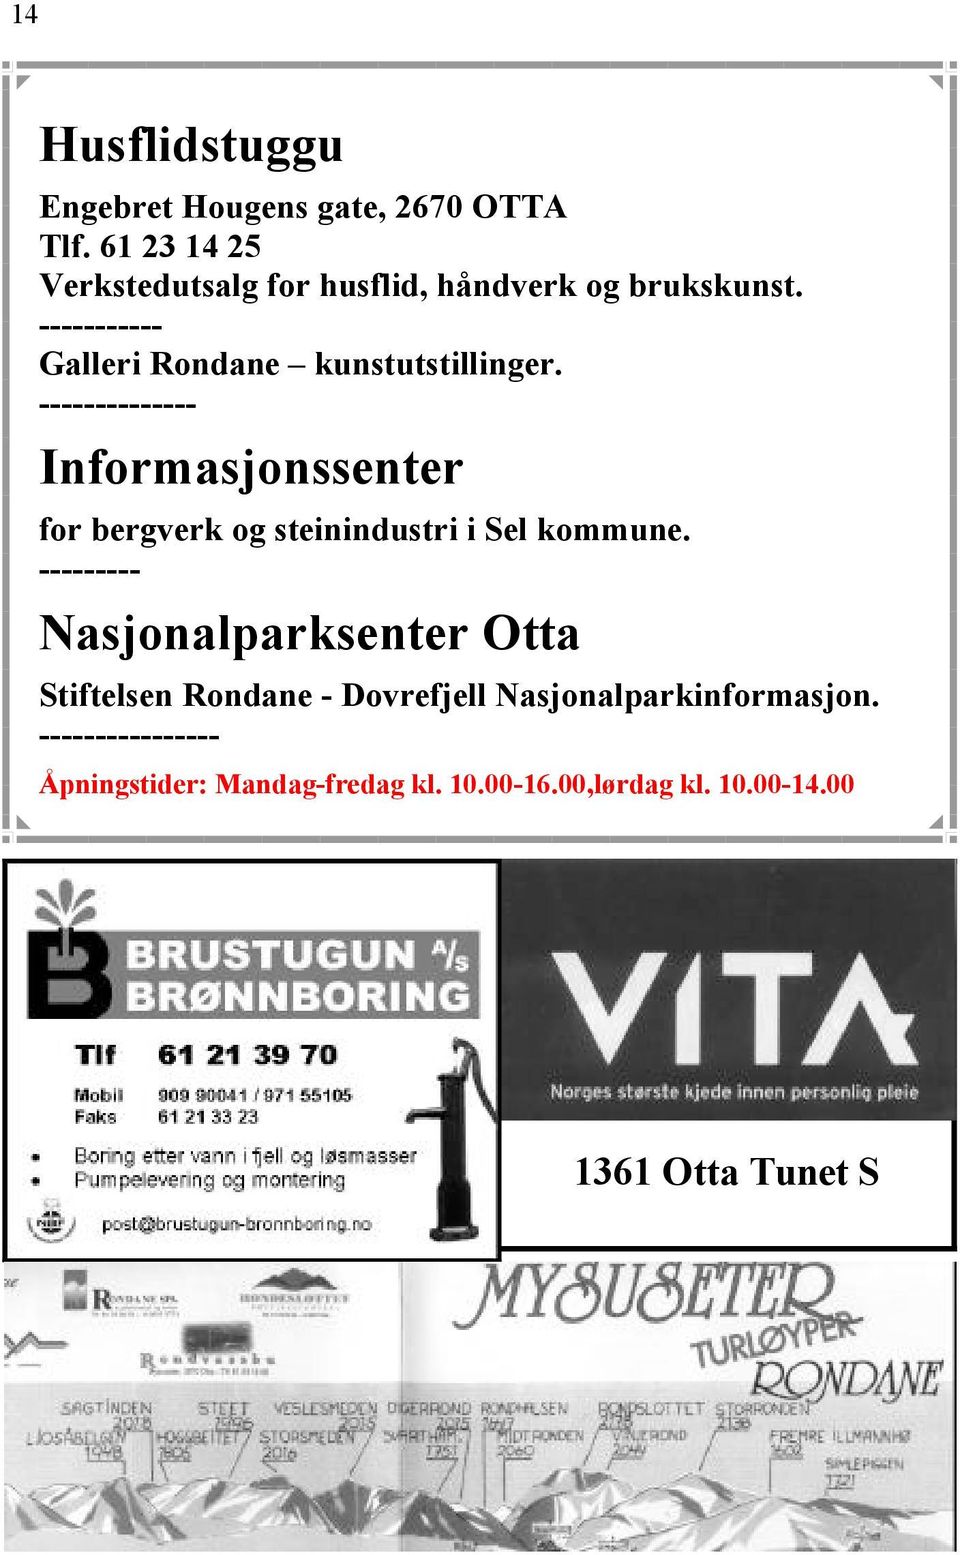 -------------- Informasjonssenter for bergverk og steinindustri i Sel kommune.